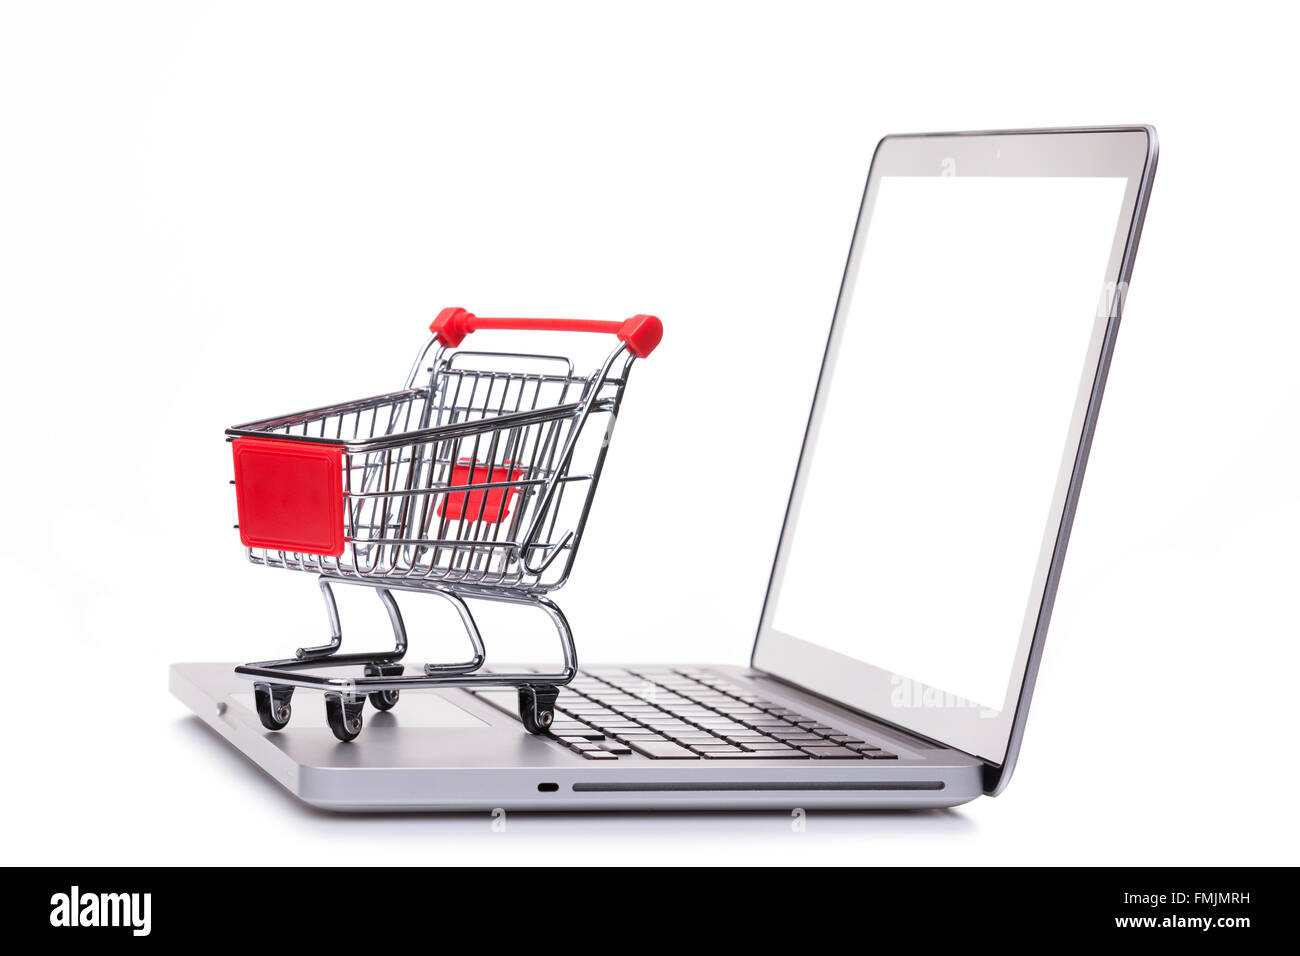 Shopping cart on laptop computer, e-comerce concept Stock Photo